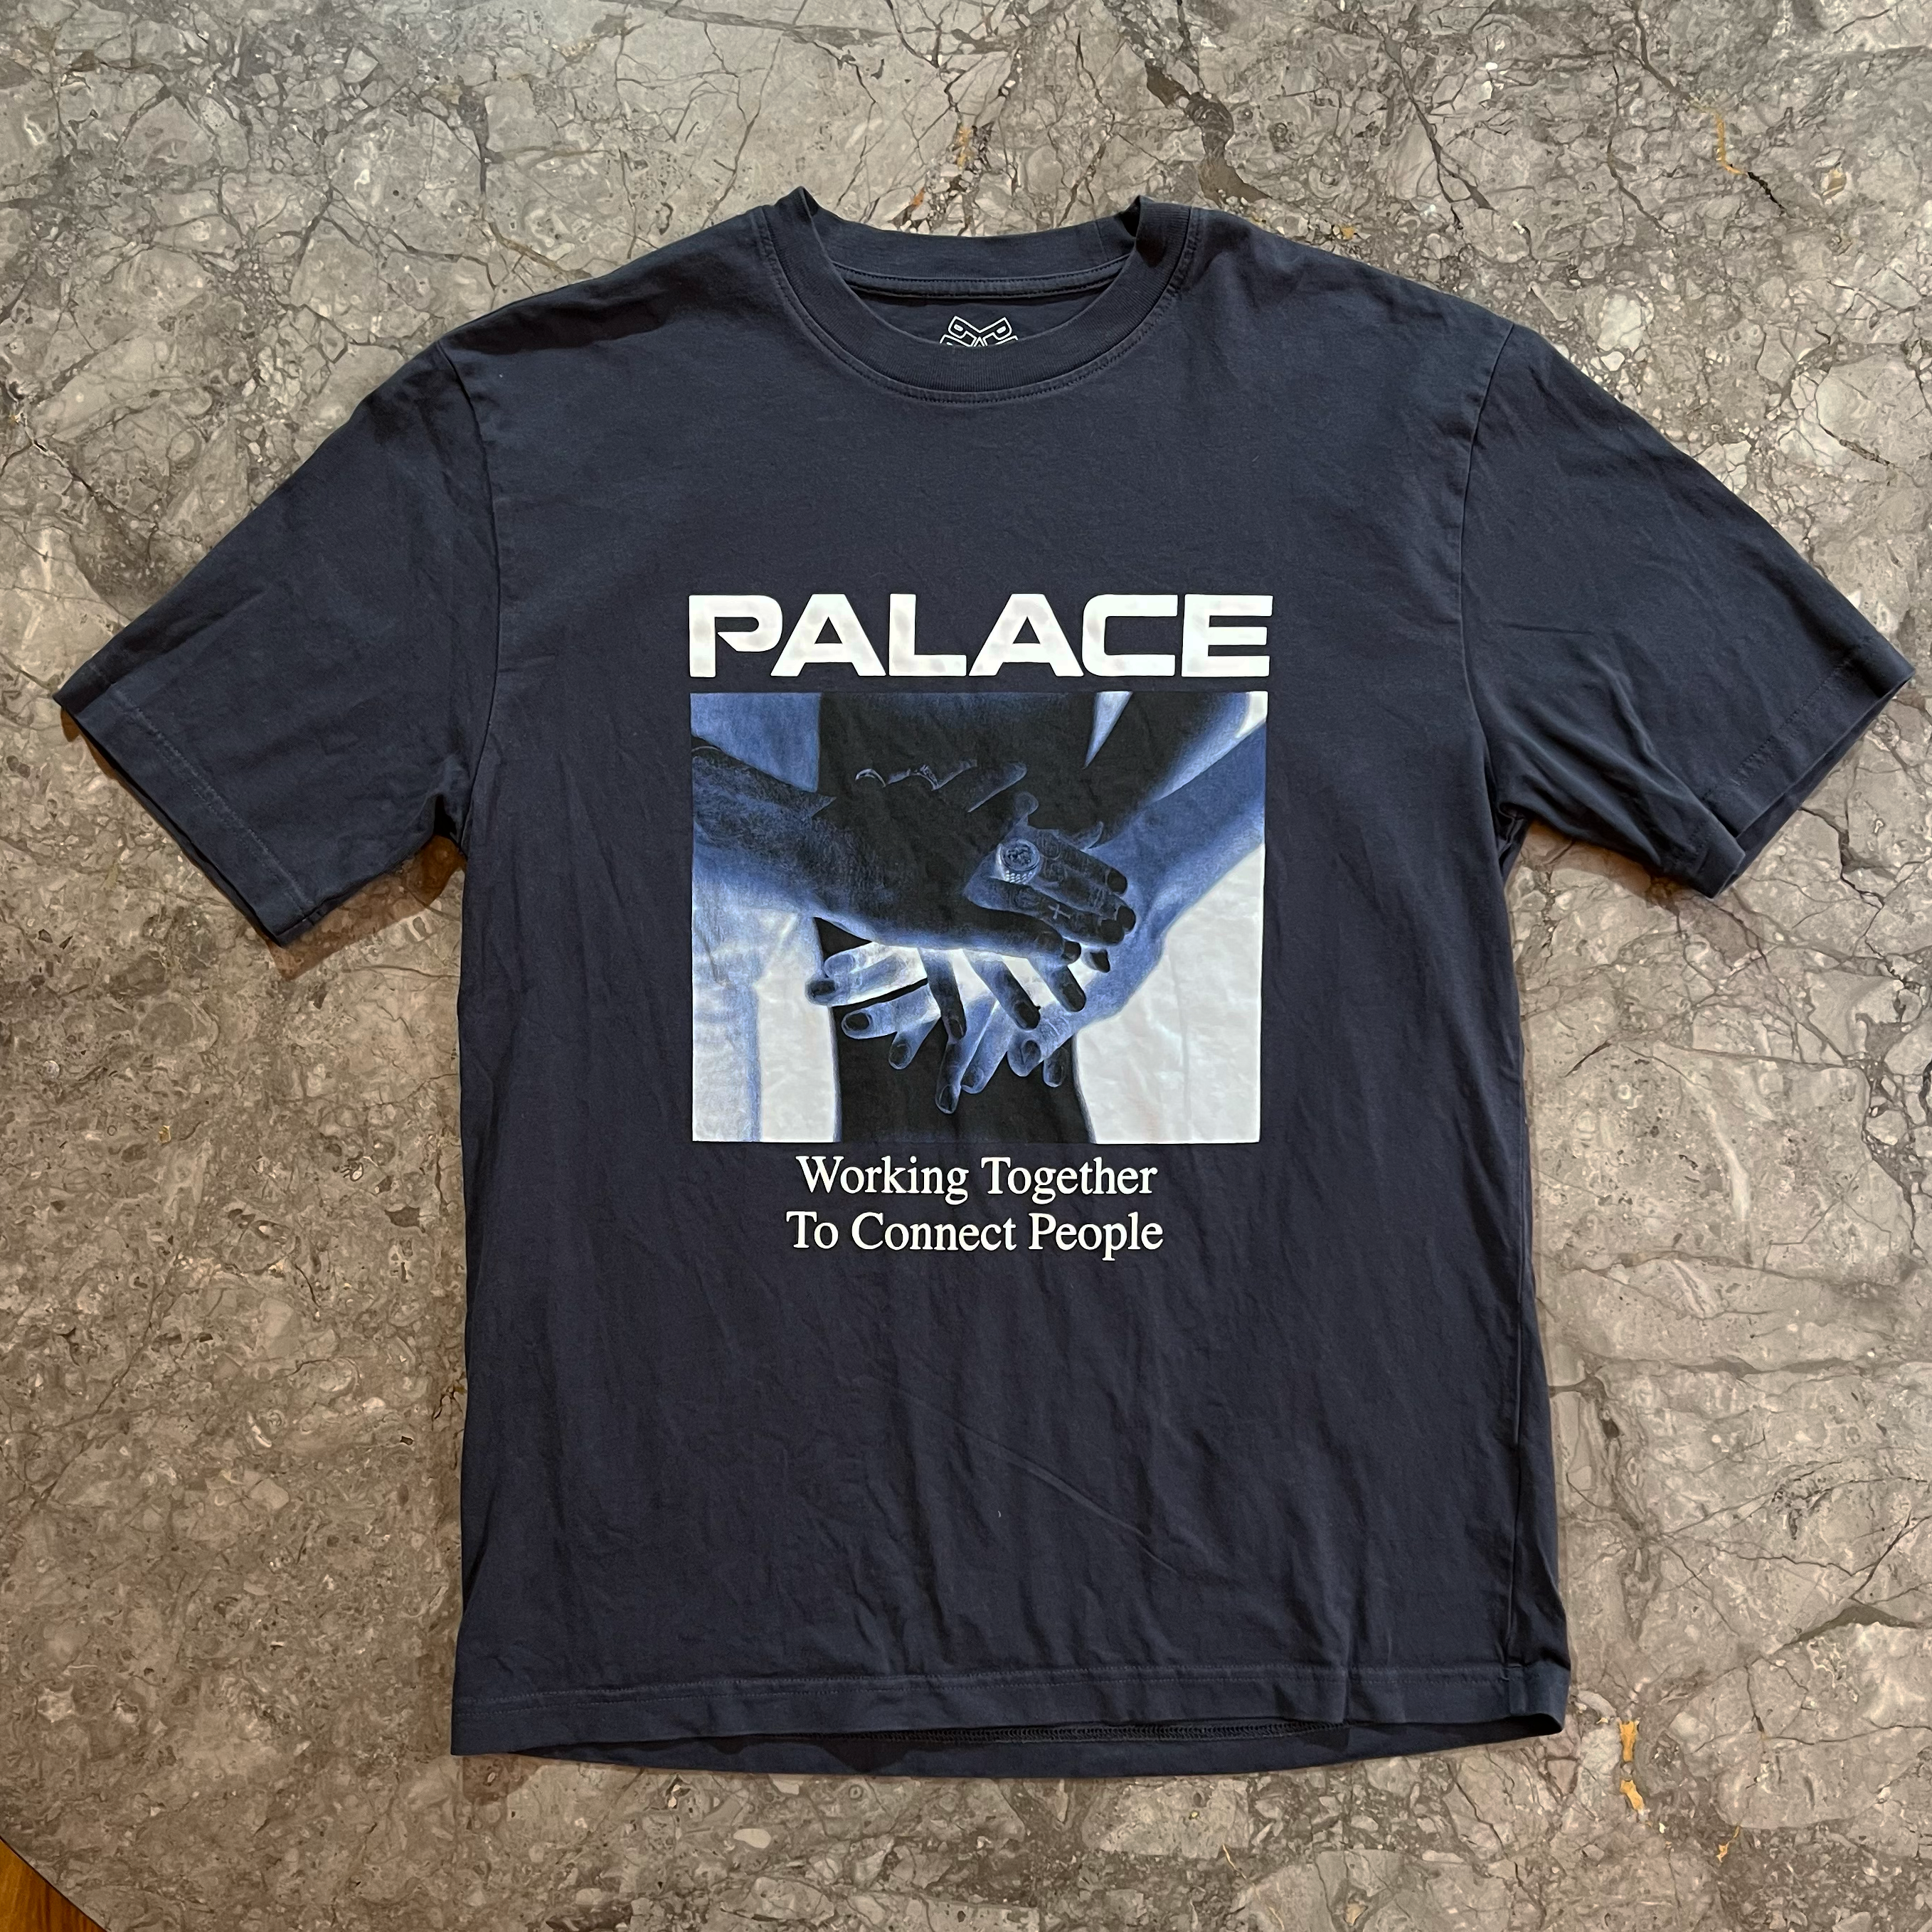 Palace T-shirt (Size L)